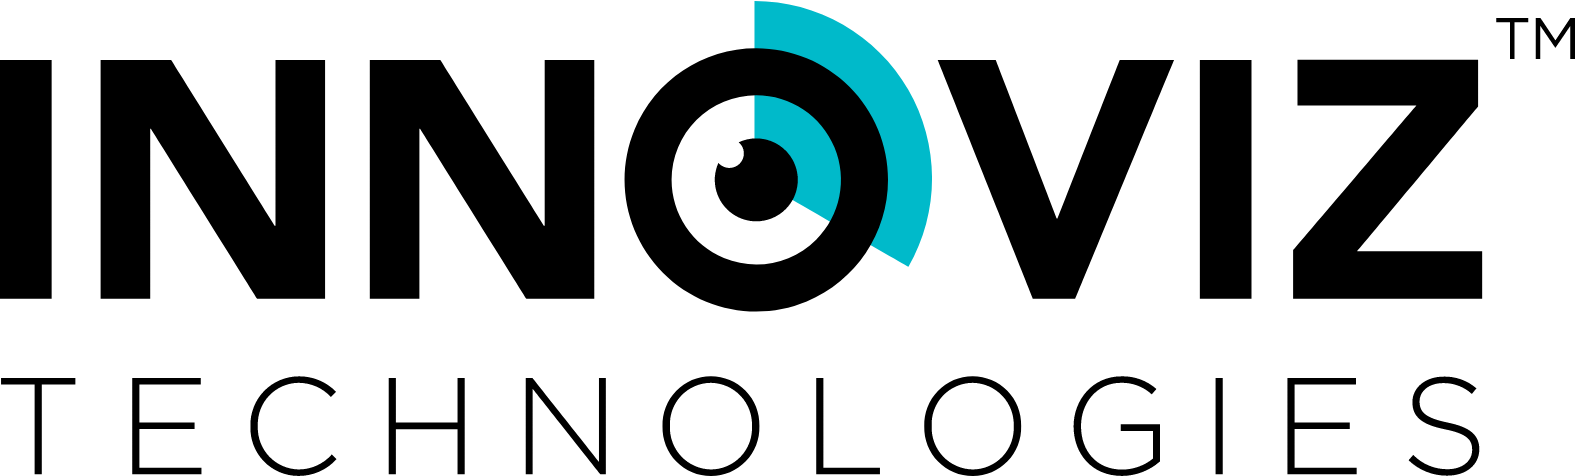 Innoviz logo large (transparent PNG)